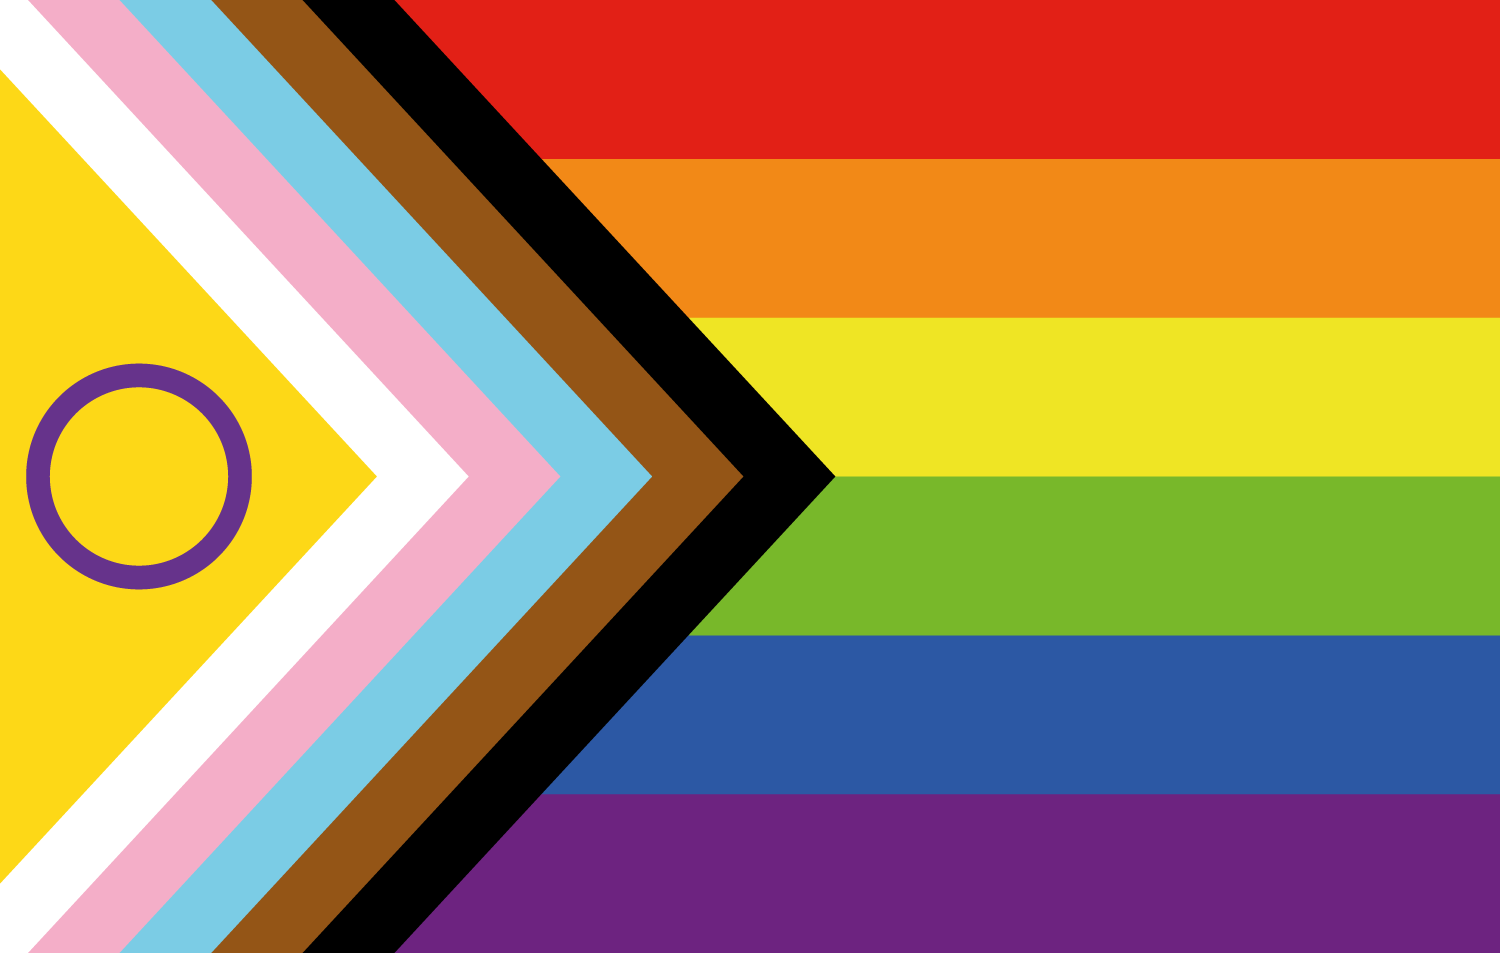 Intersex inclusive pride flag by Valentino Vecchietti